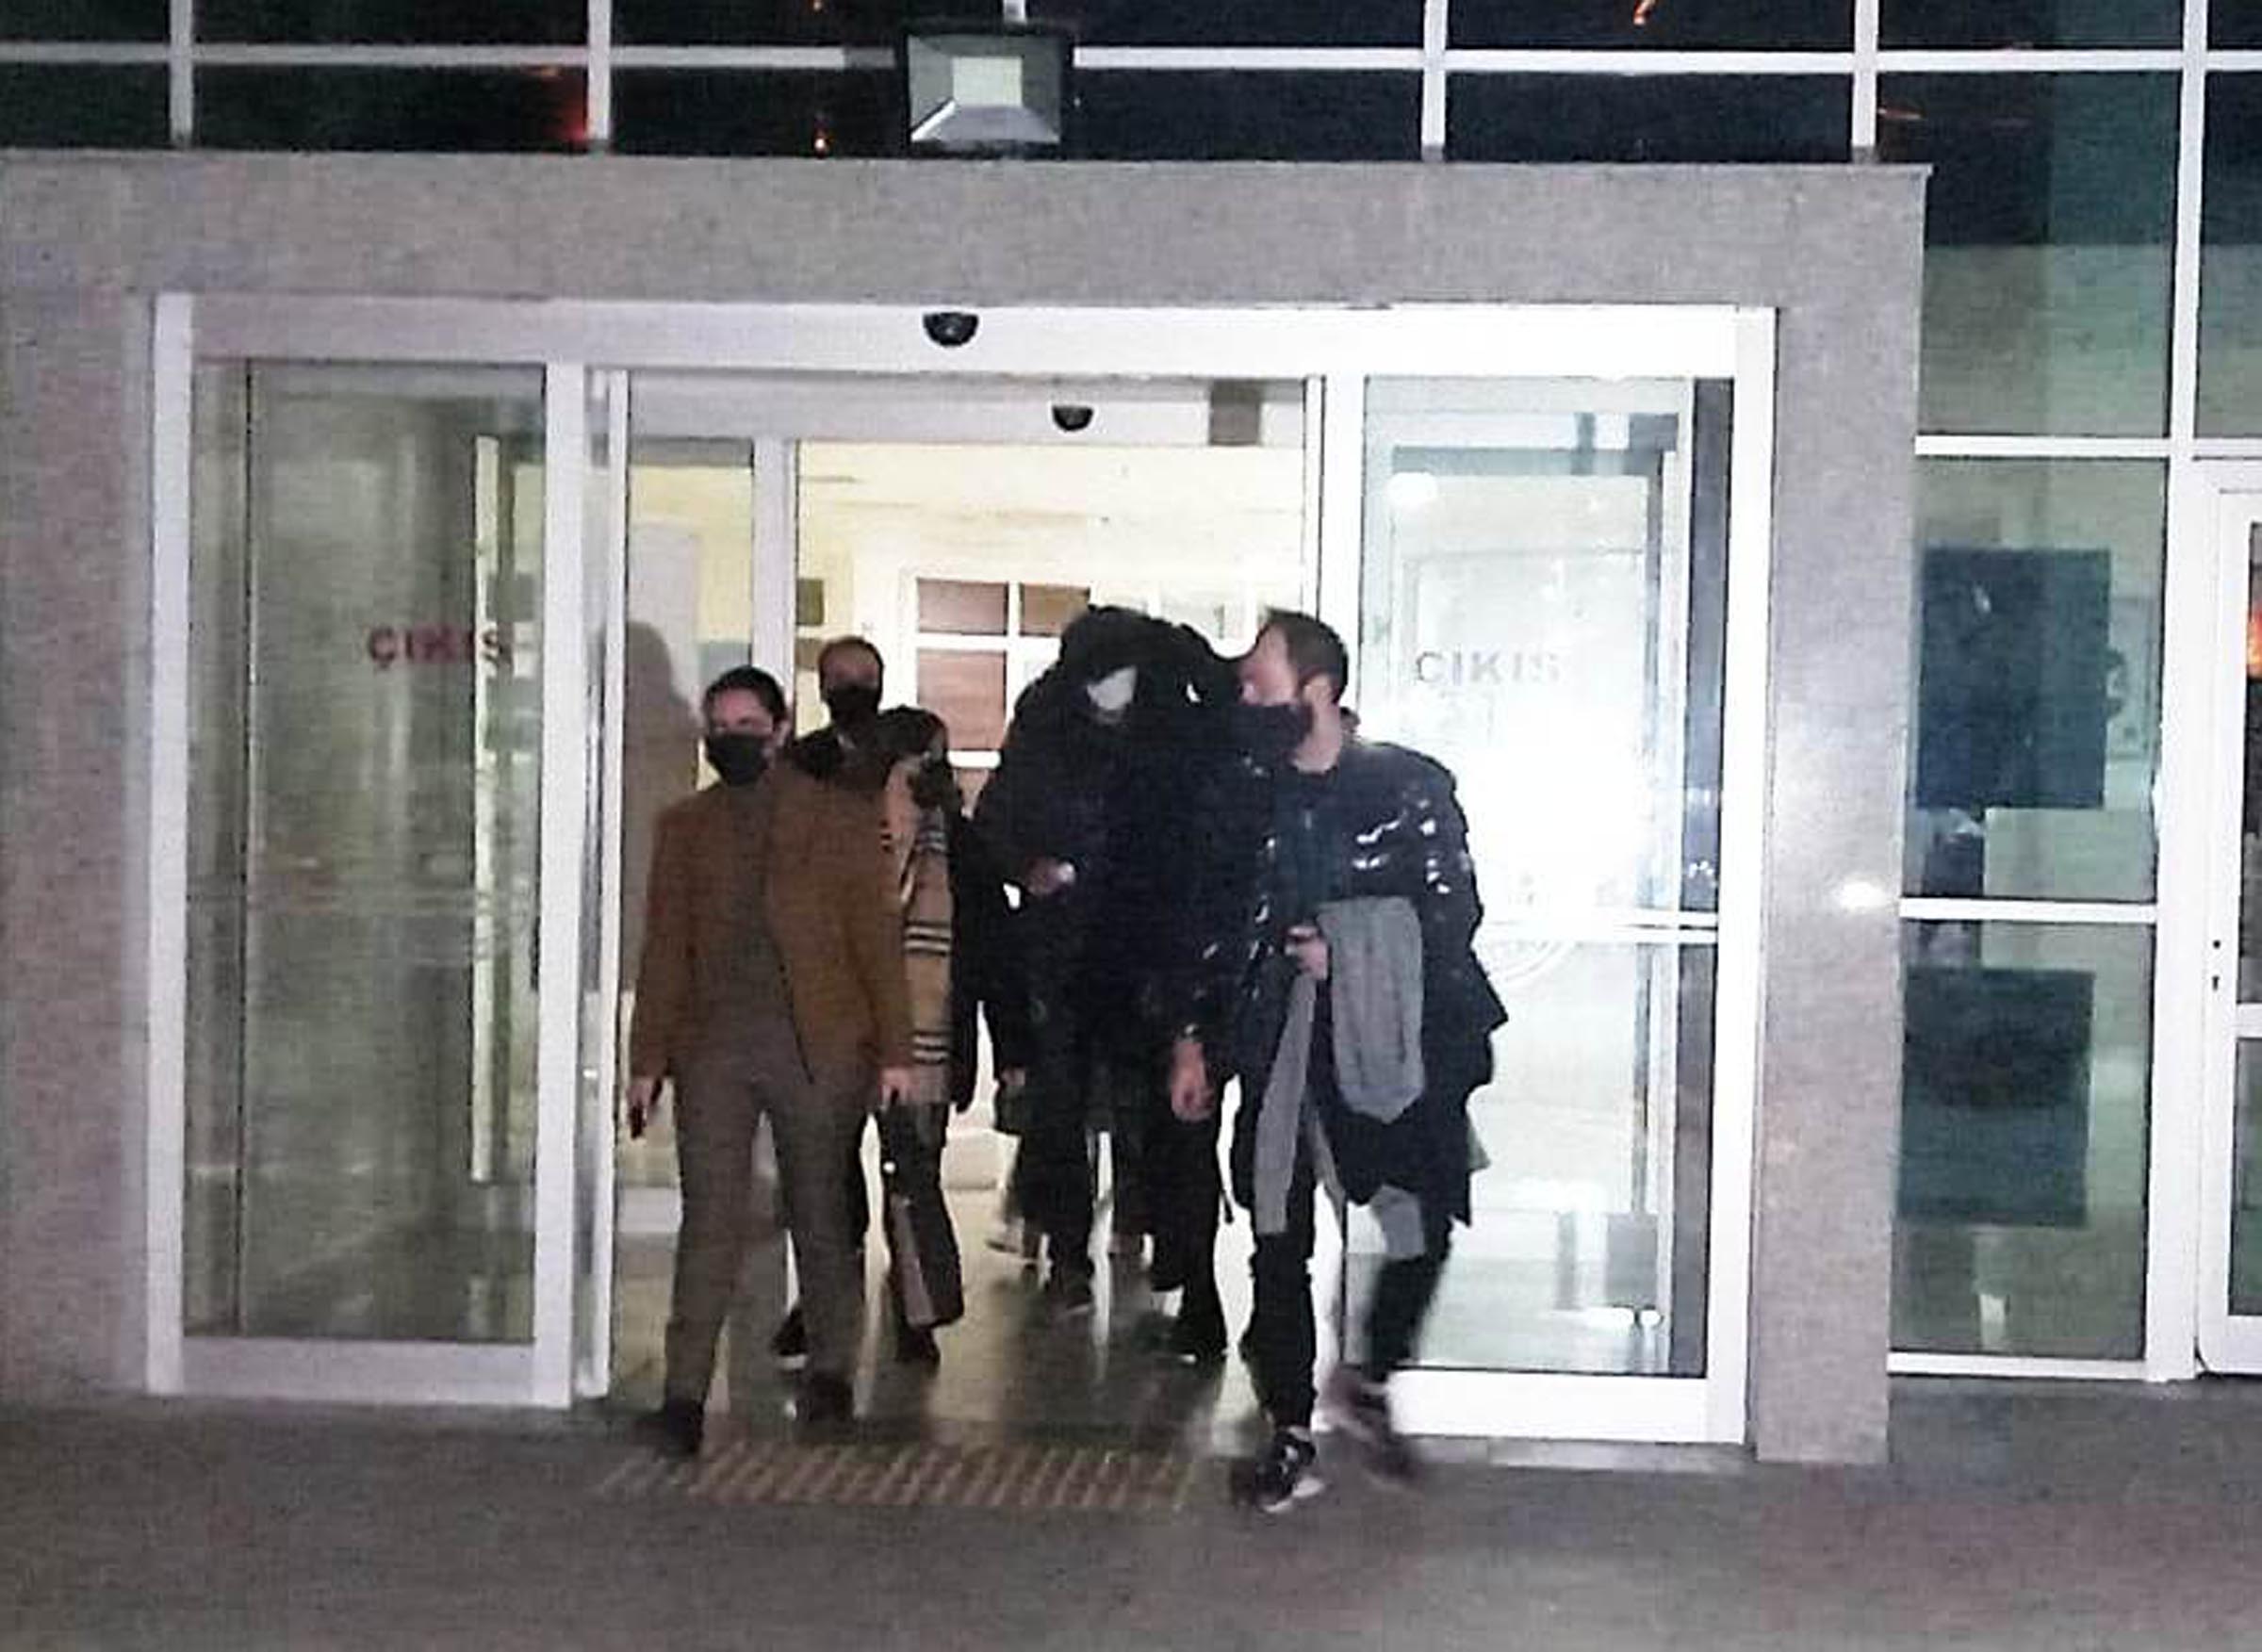 Turistik gezi için geldiği Edirne'de askeri yasak bölgeye giren Yunanistan polisi gözaltına alındı, yurtdışı çıkış yasağı konularak serbest bırakıldı